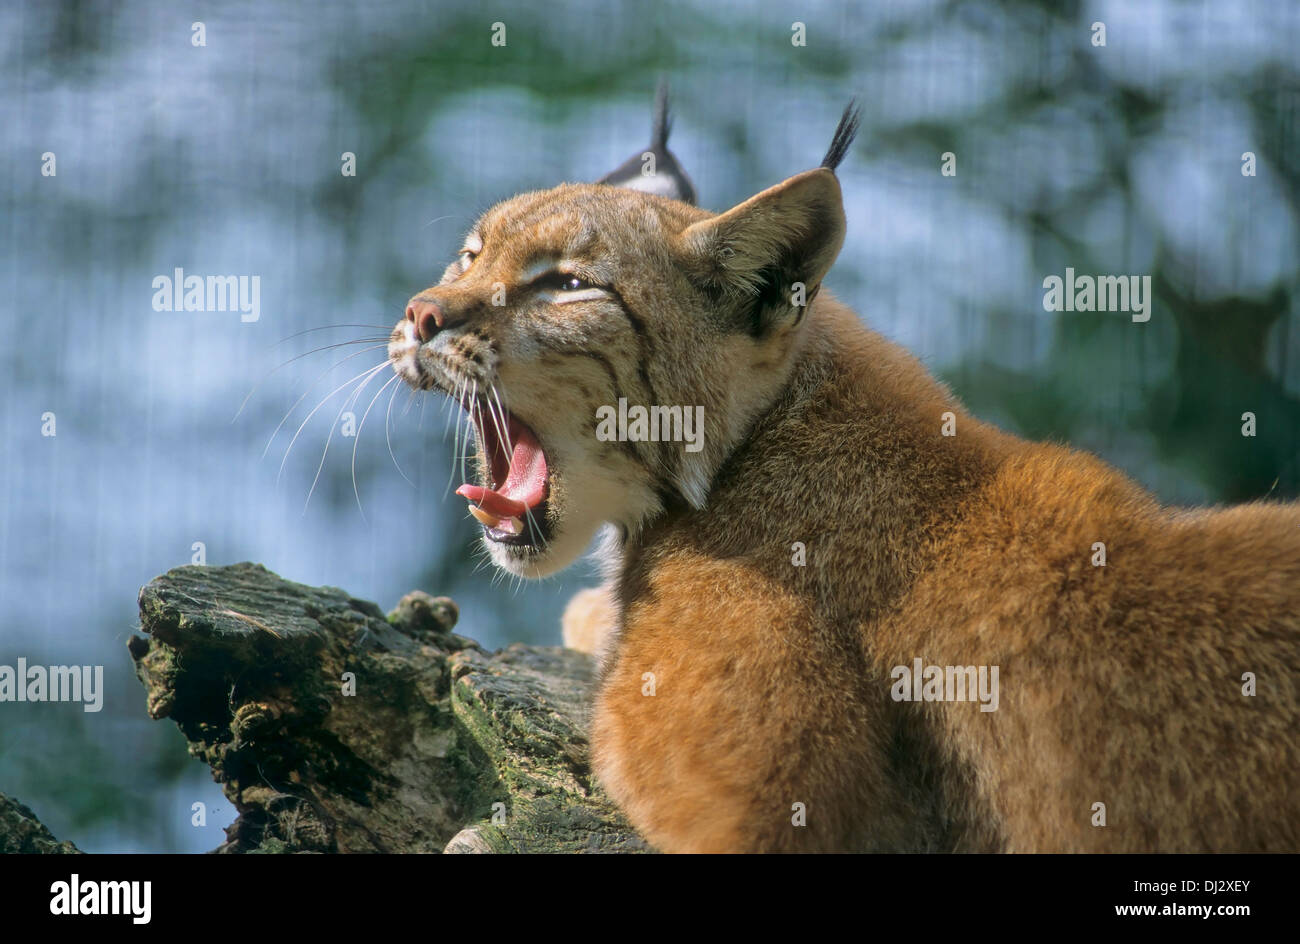 Eurasian lynx (Lynx lynx), Europäischer Luchs, Eurasischer Luchs (Lynx lynx) Stock Photo